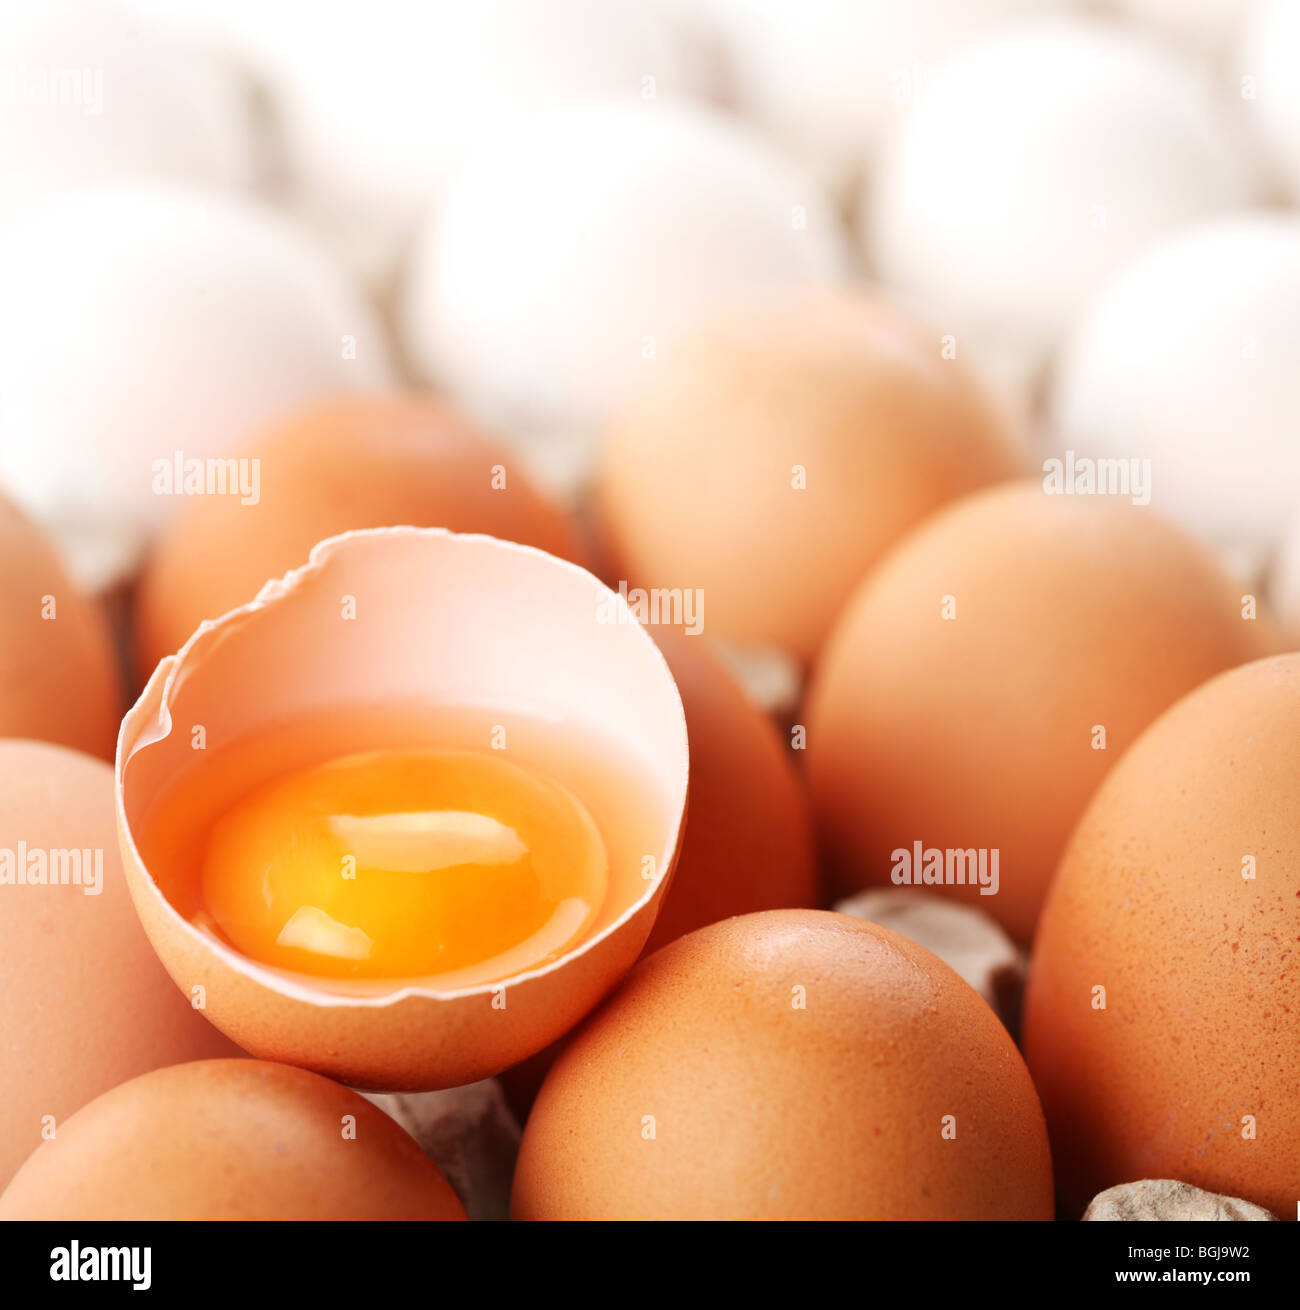 Rotto uovo marrone è tra gli albumi delle uova. Foto Stock